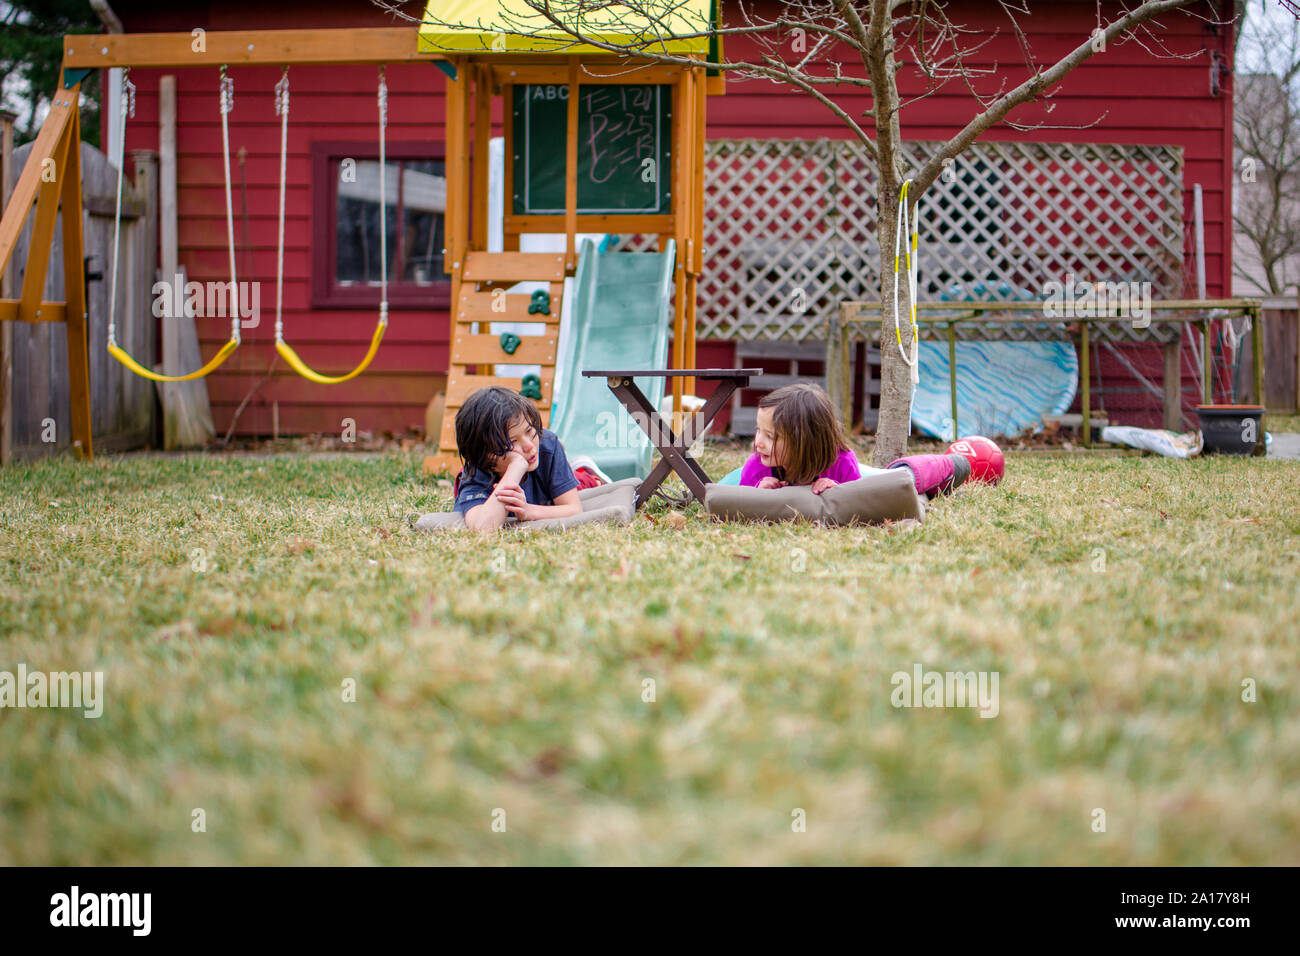 Deux heureux des enfants déposent sur des nattes dans leur cour bavardant ensemble Banque D'Images